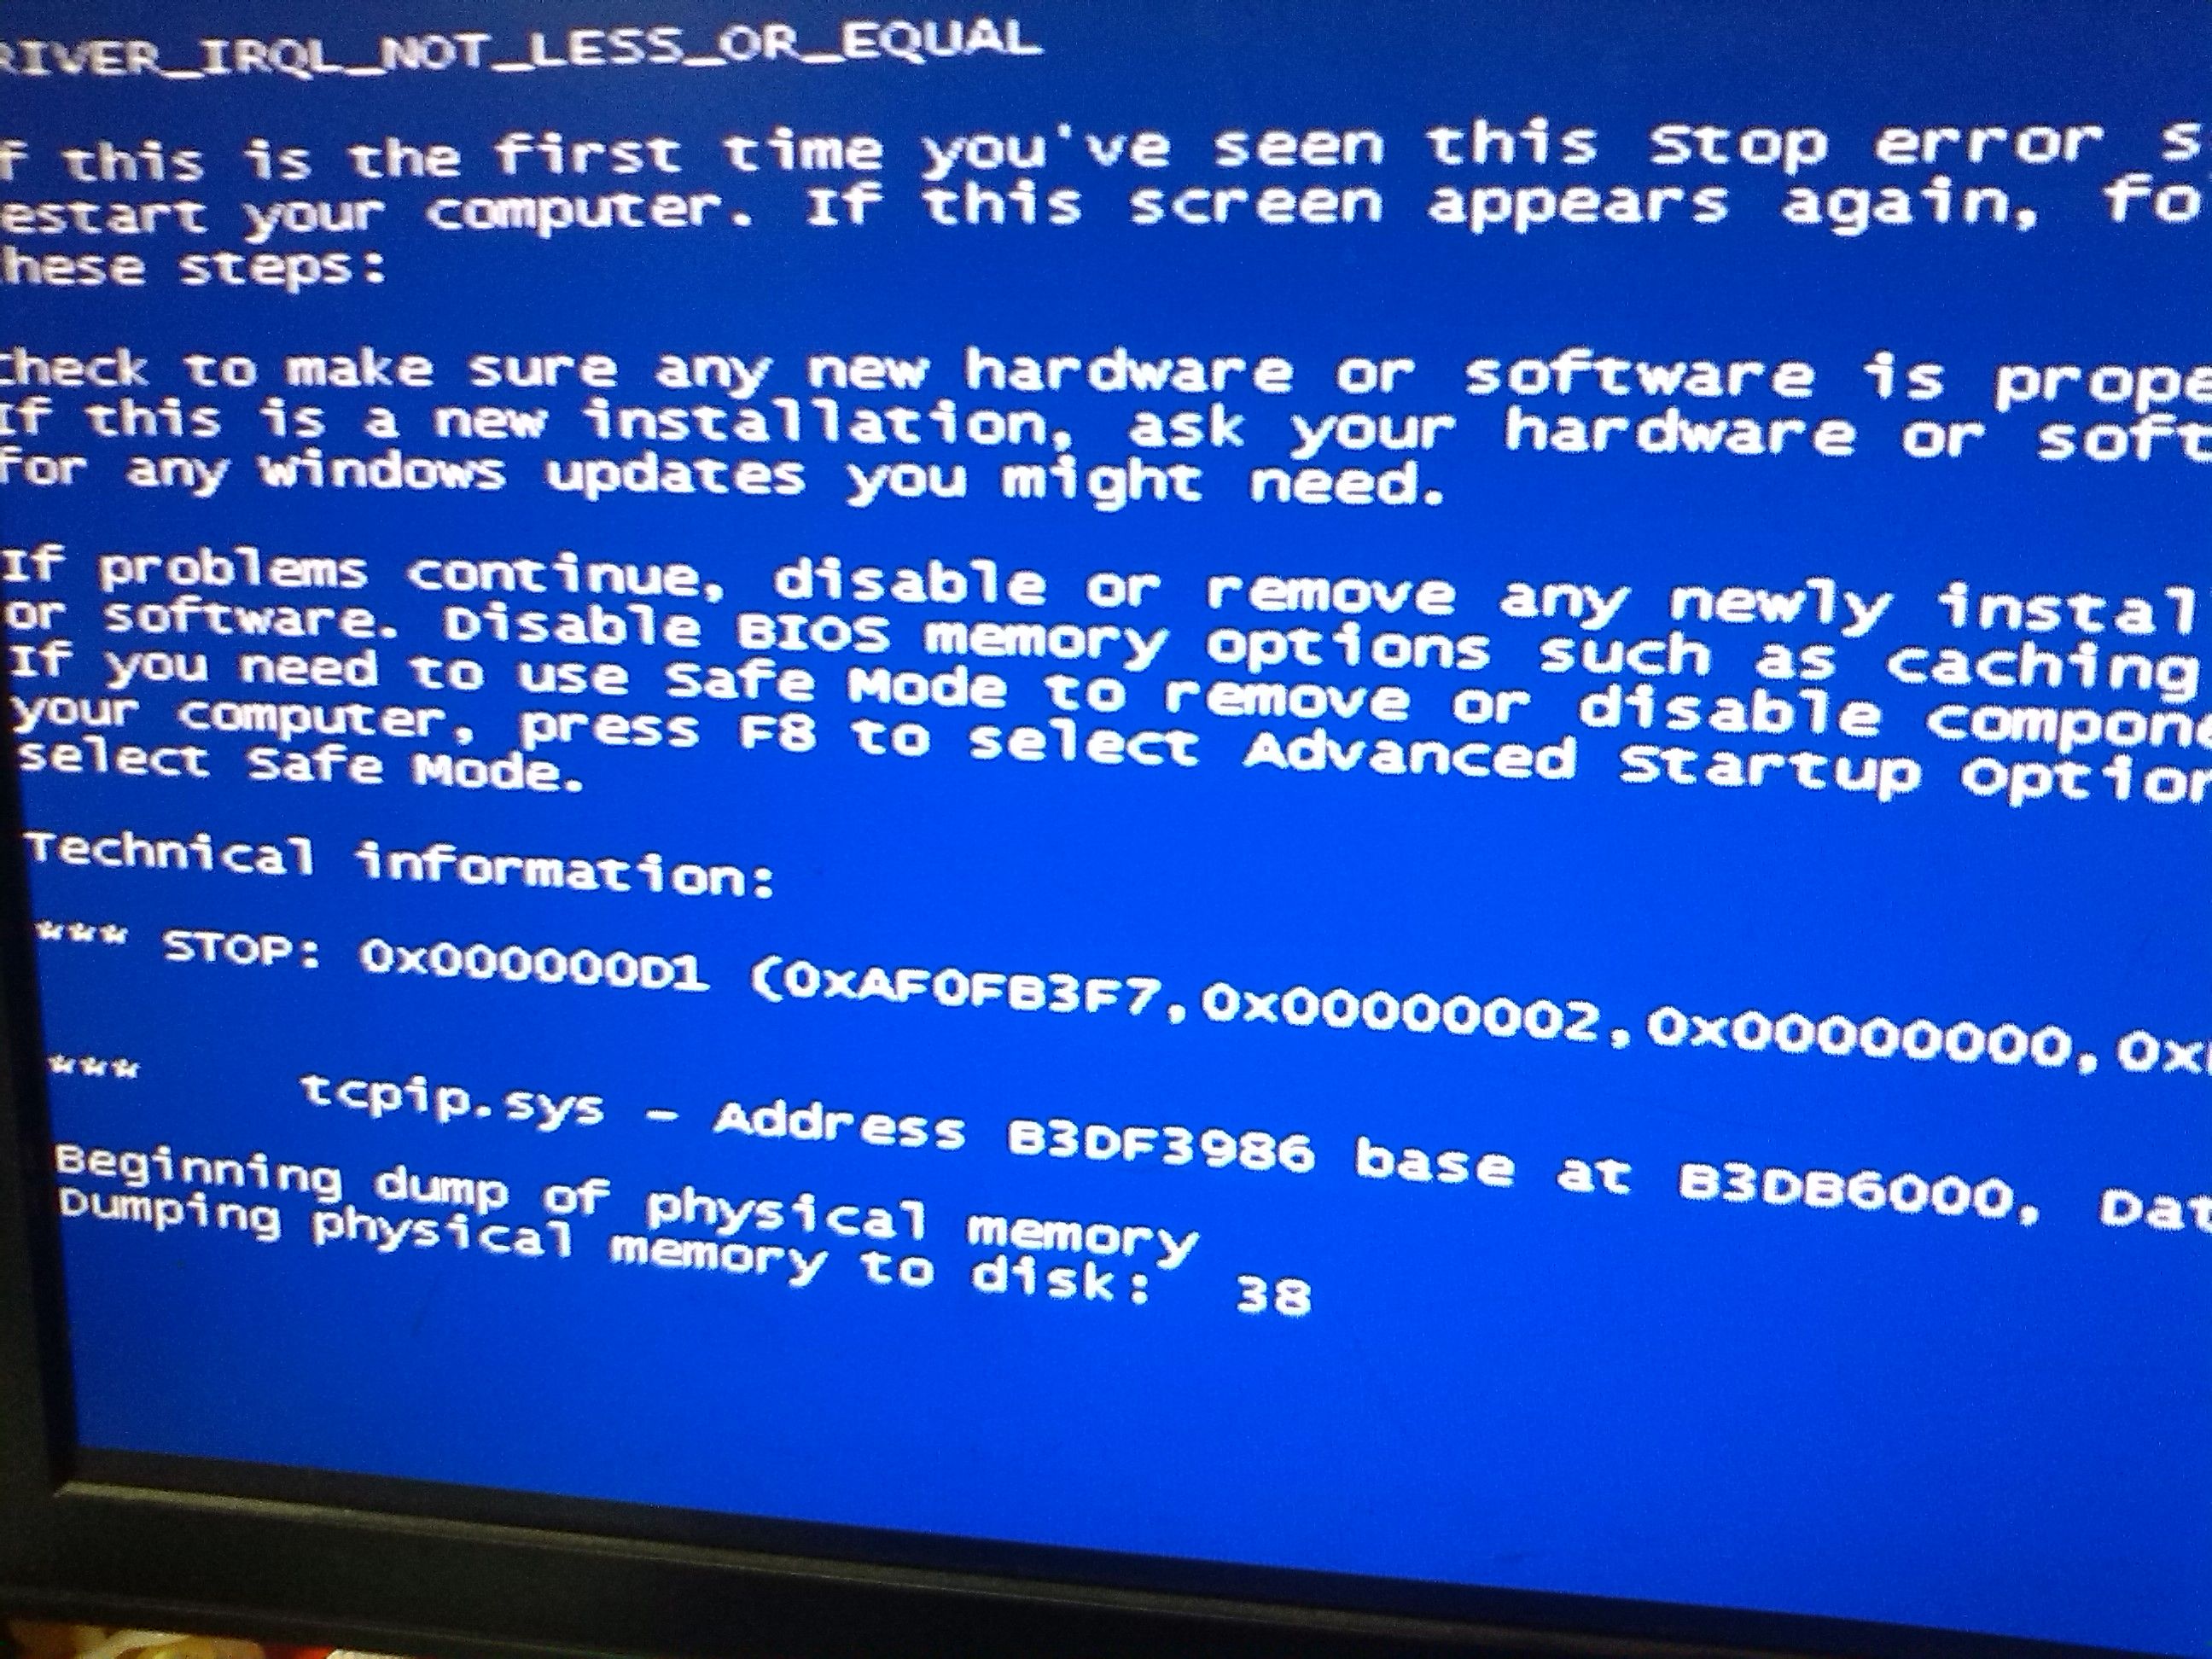 玩了一下方舟，電腦藍屏了，是什麼原因？是我電腦配置的問題嗎？